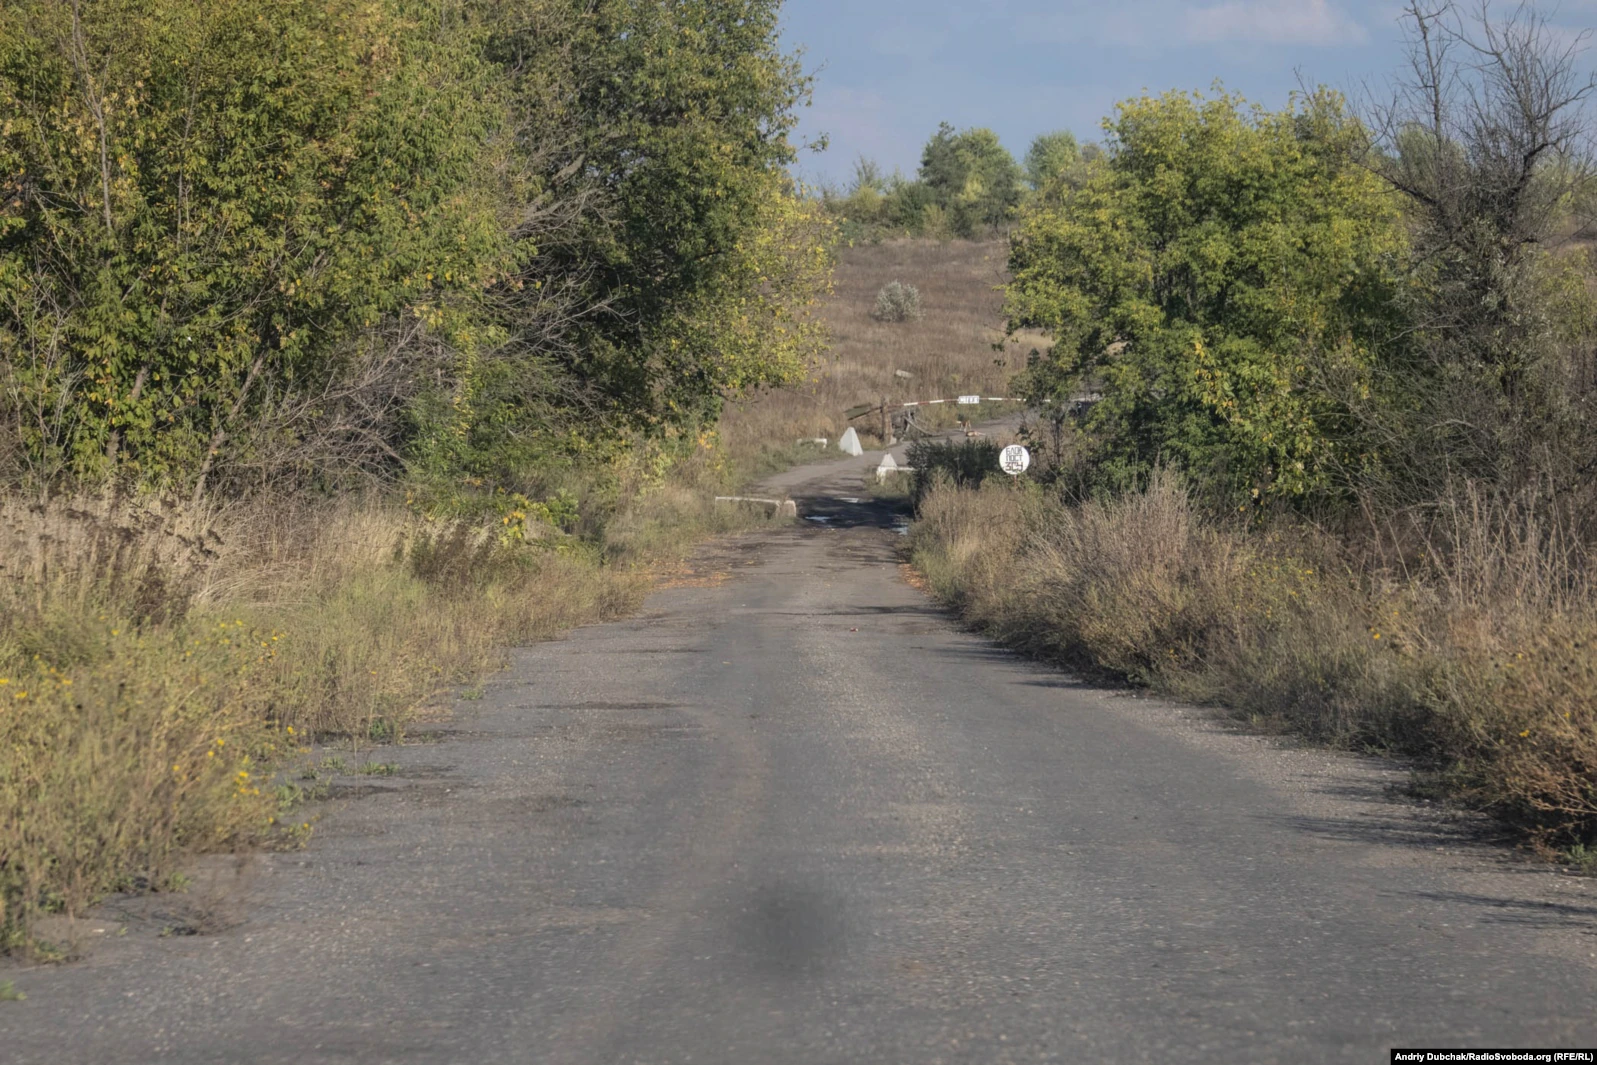 Donbas Frontliner / Кінець села. Далі окопи і війна. Кримське, вересень 2021 року